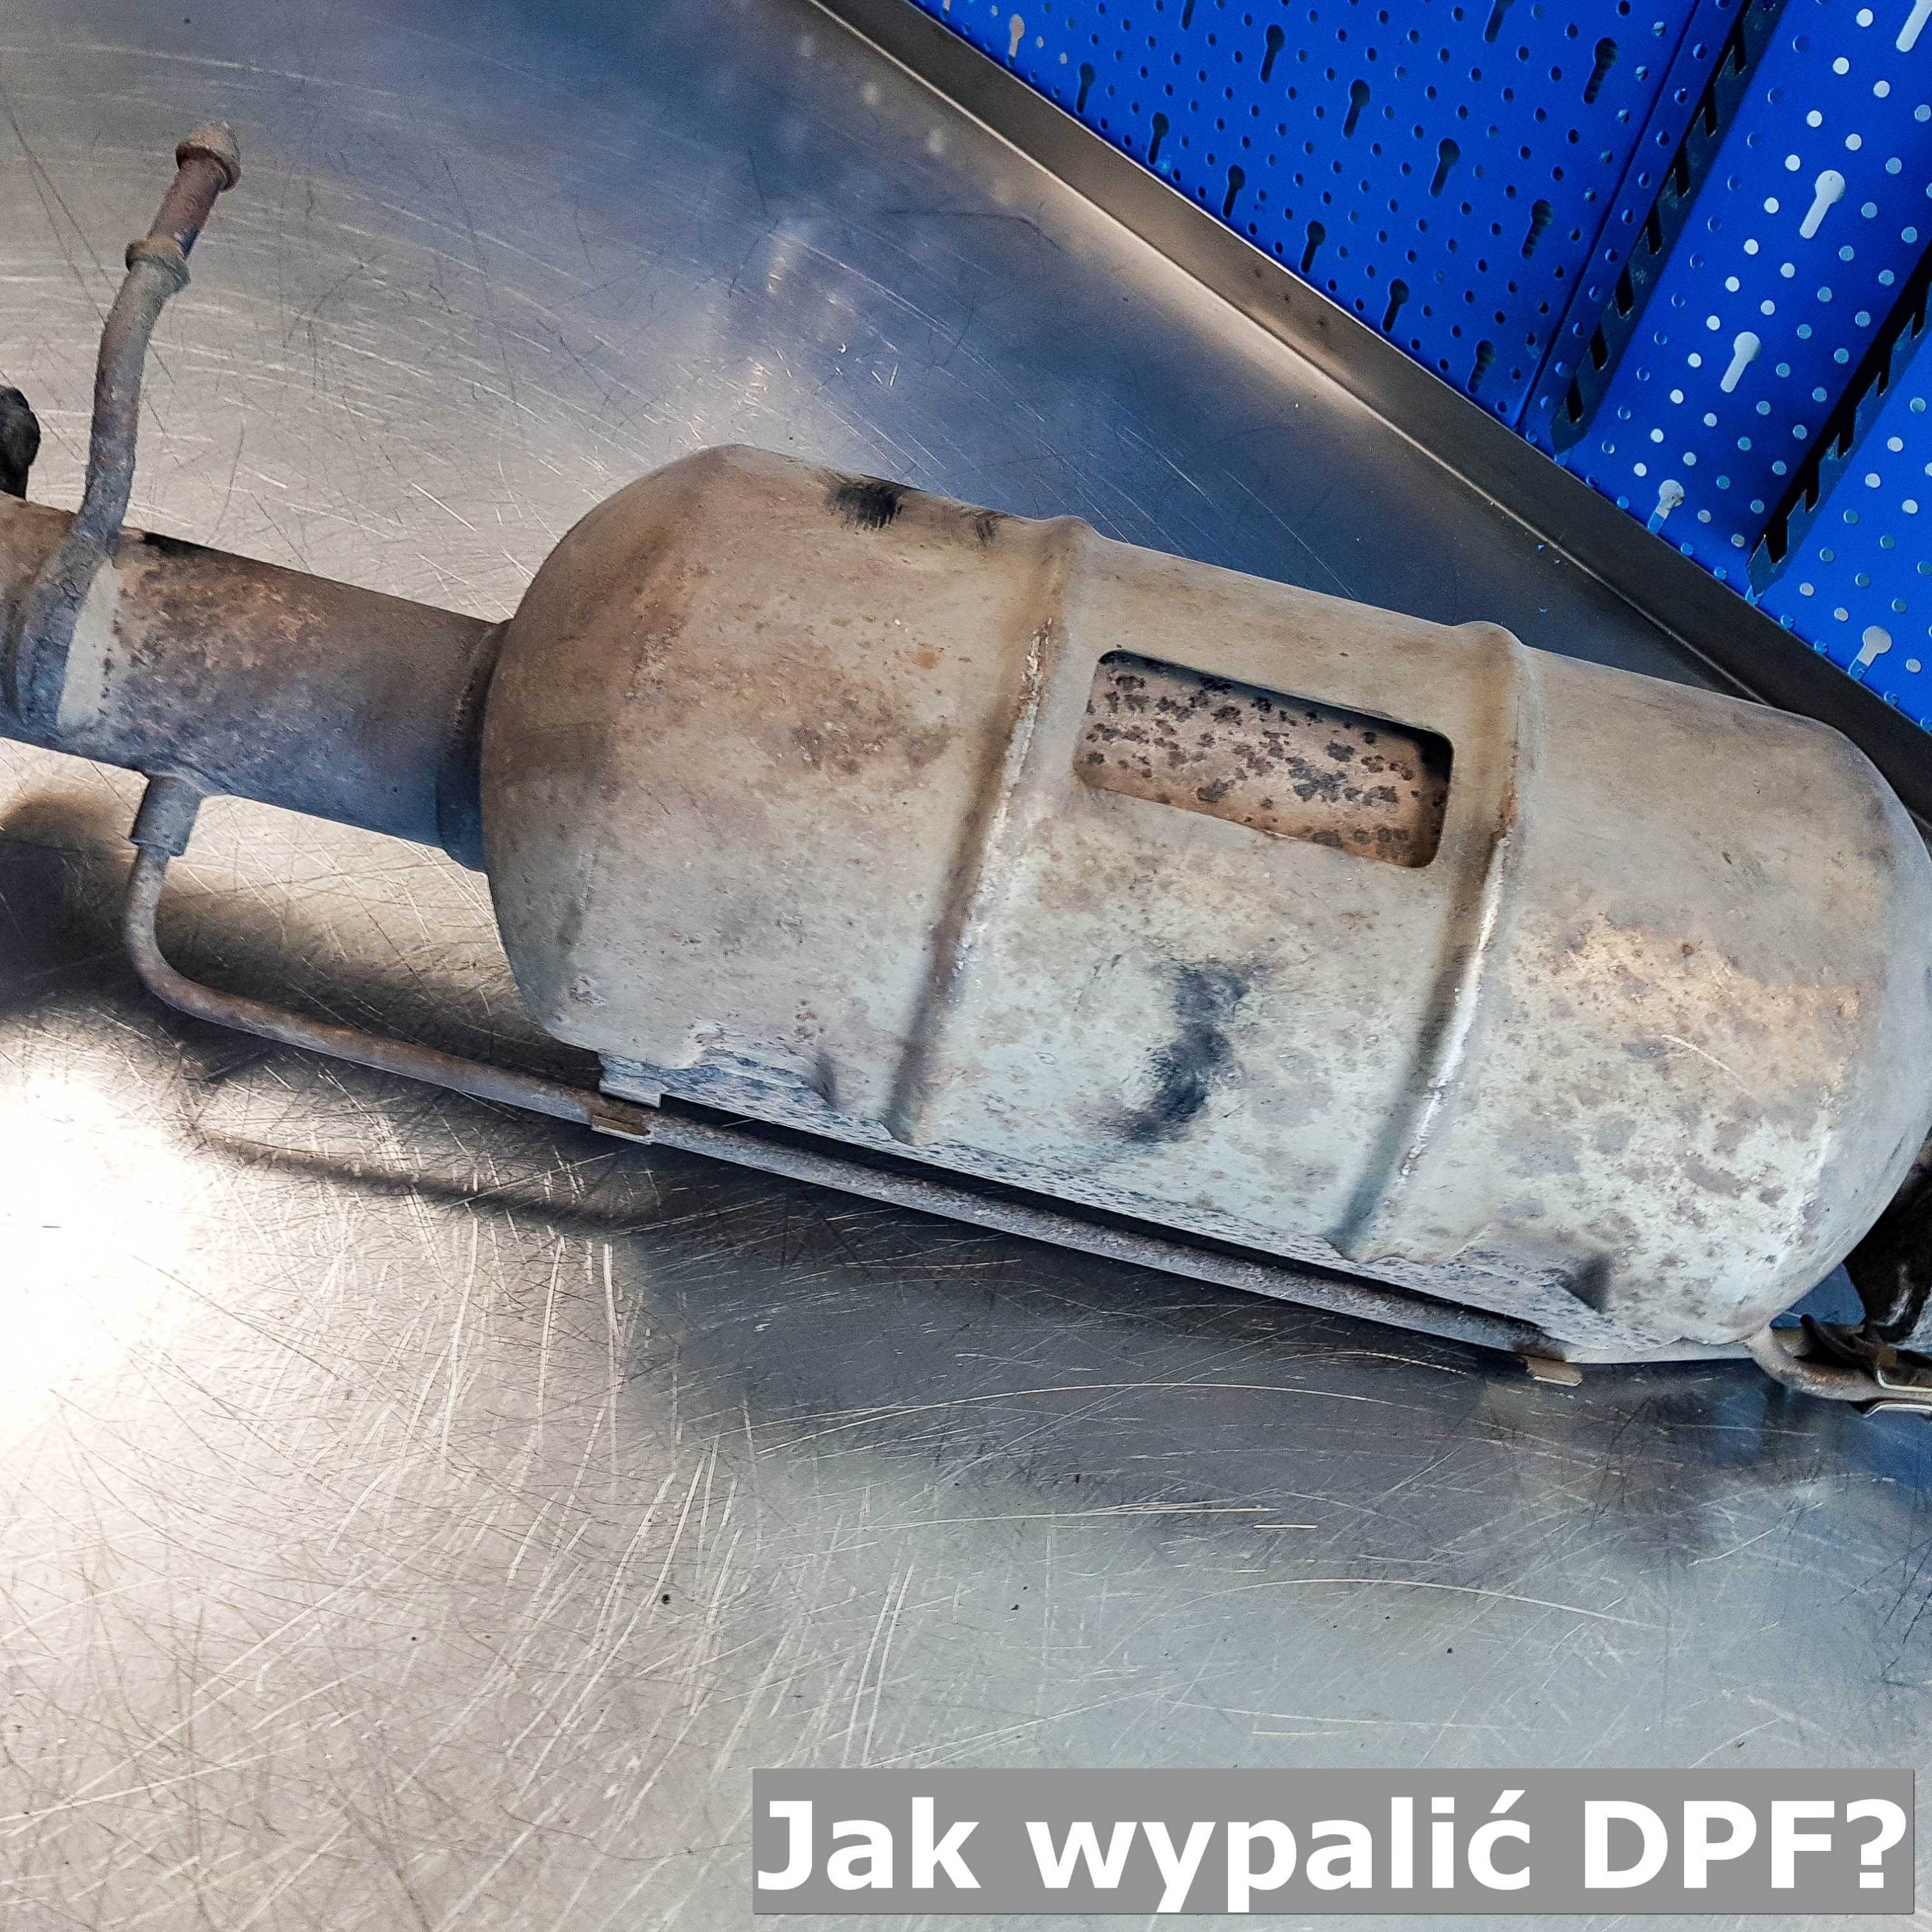 Jak wypalić DPF? filtrydpffap.pl